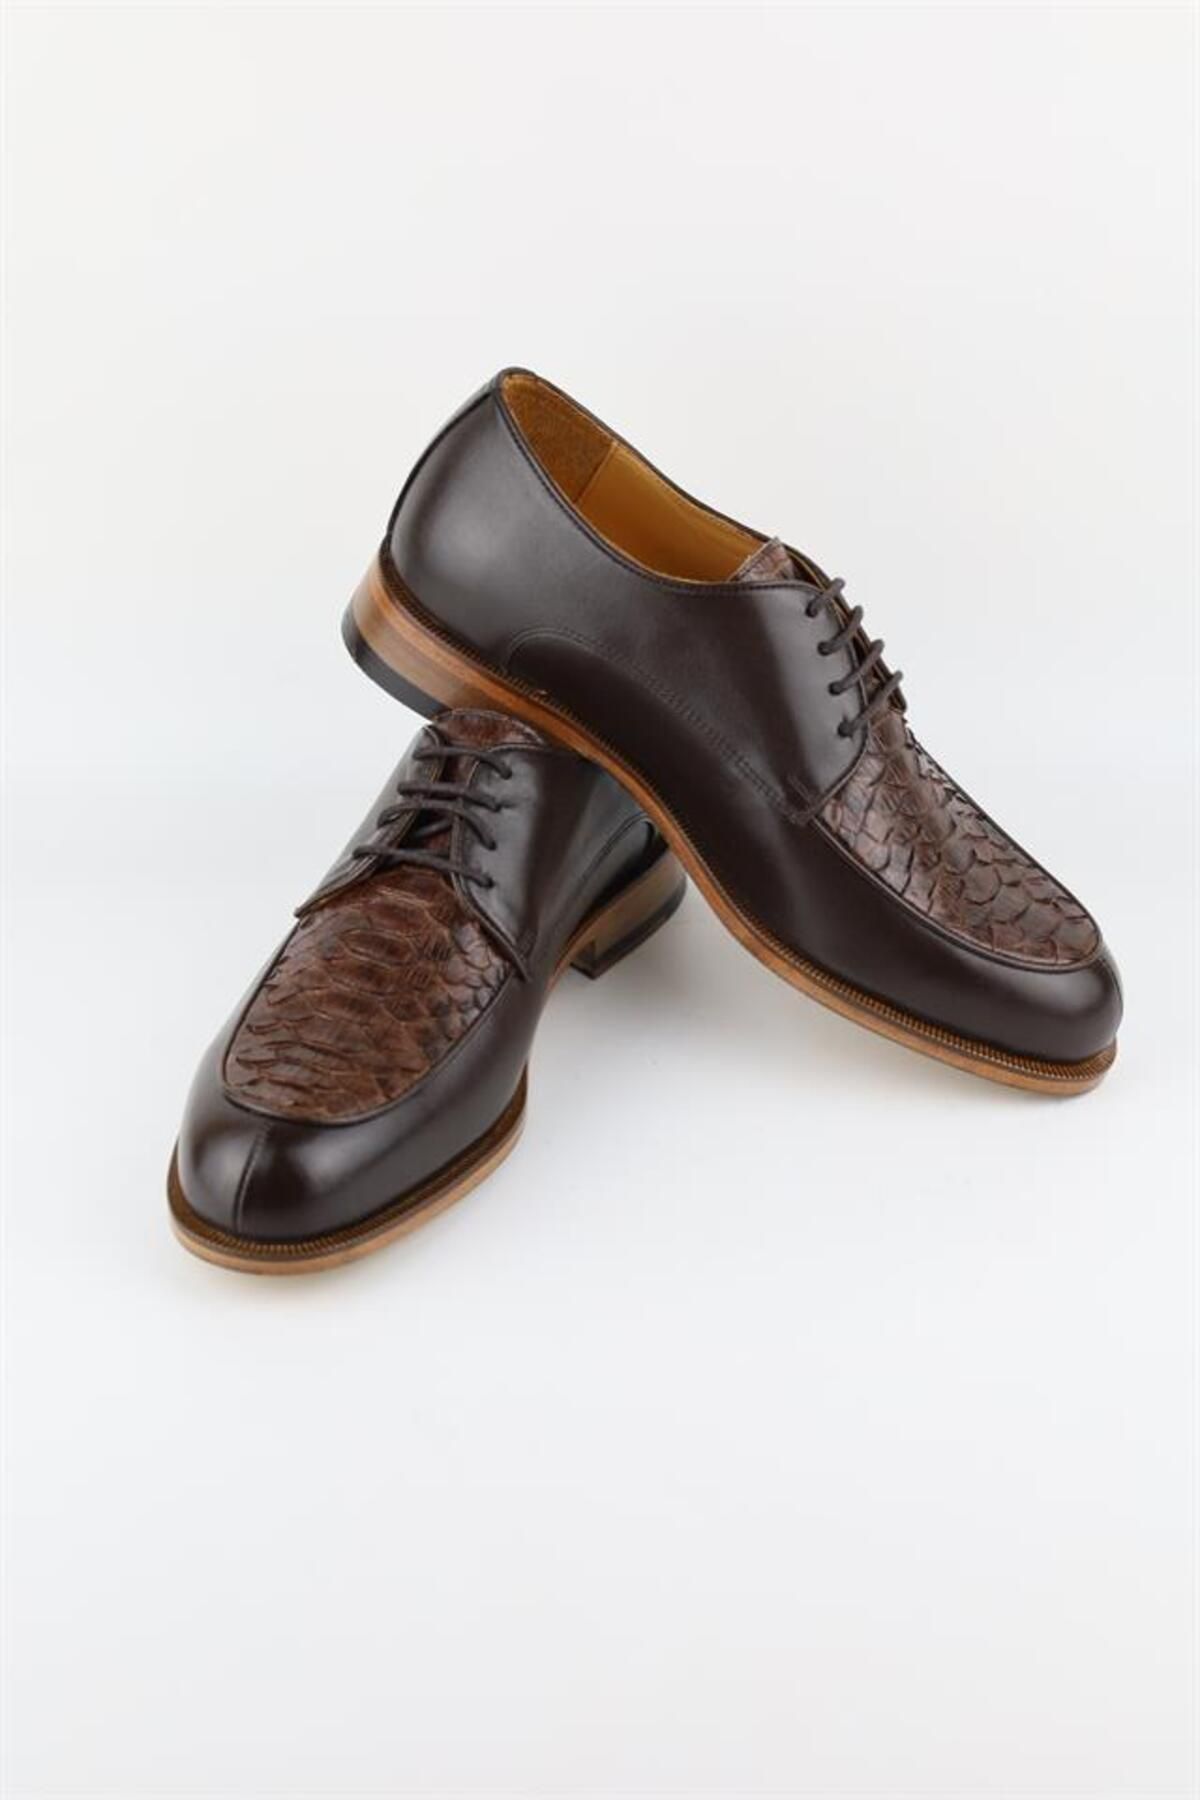 HARRY MANSON Model 075 Hakiki Dana-piton Deri Erkek Klasik Ayakkabı